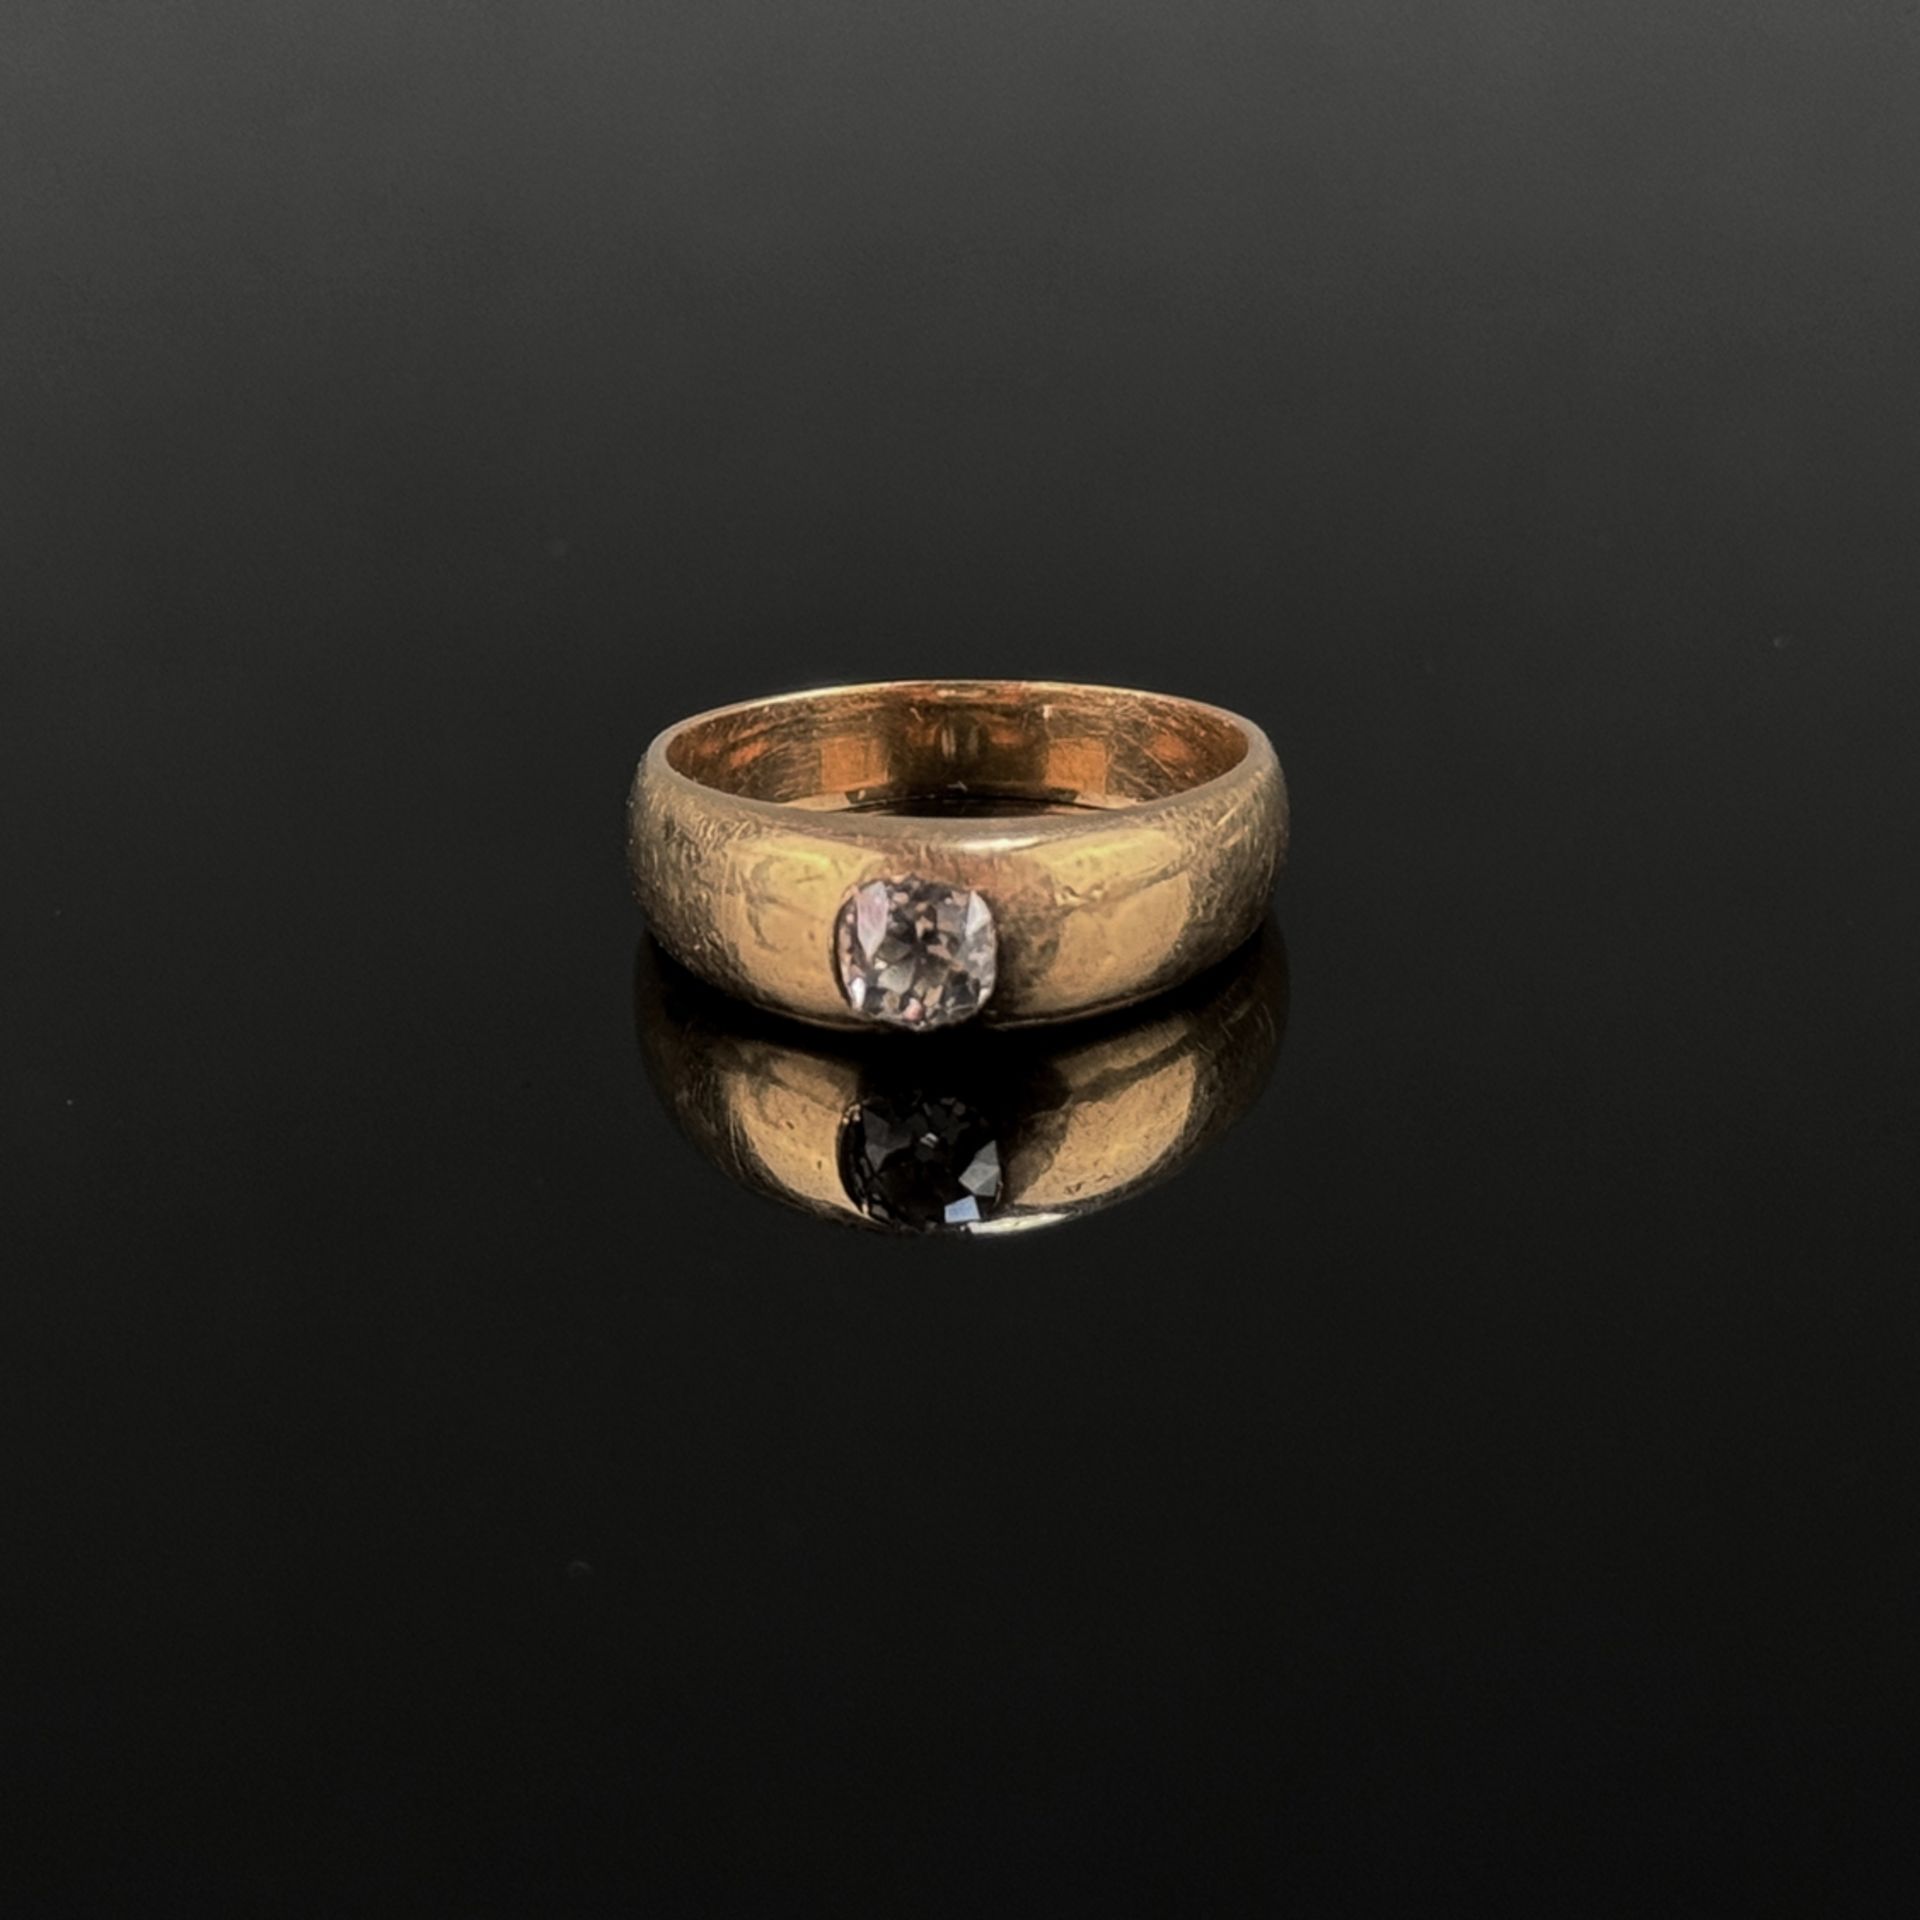 Solitär Ring, 750/18K Gelbgold (getestet), 6,6g, mittig Diamant im Brillantschliff von um ca. 0,3ct - Bild 2 aus 2